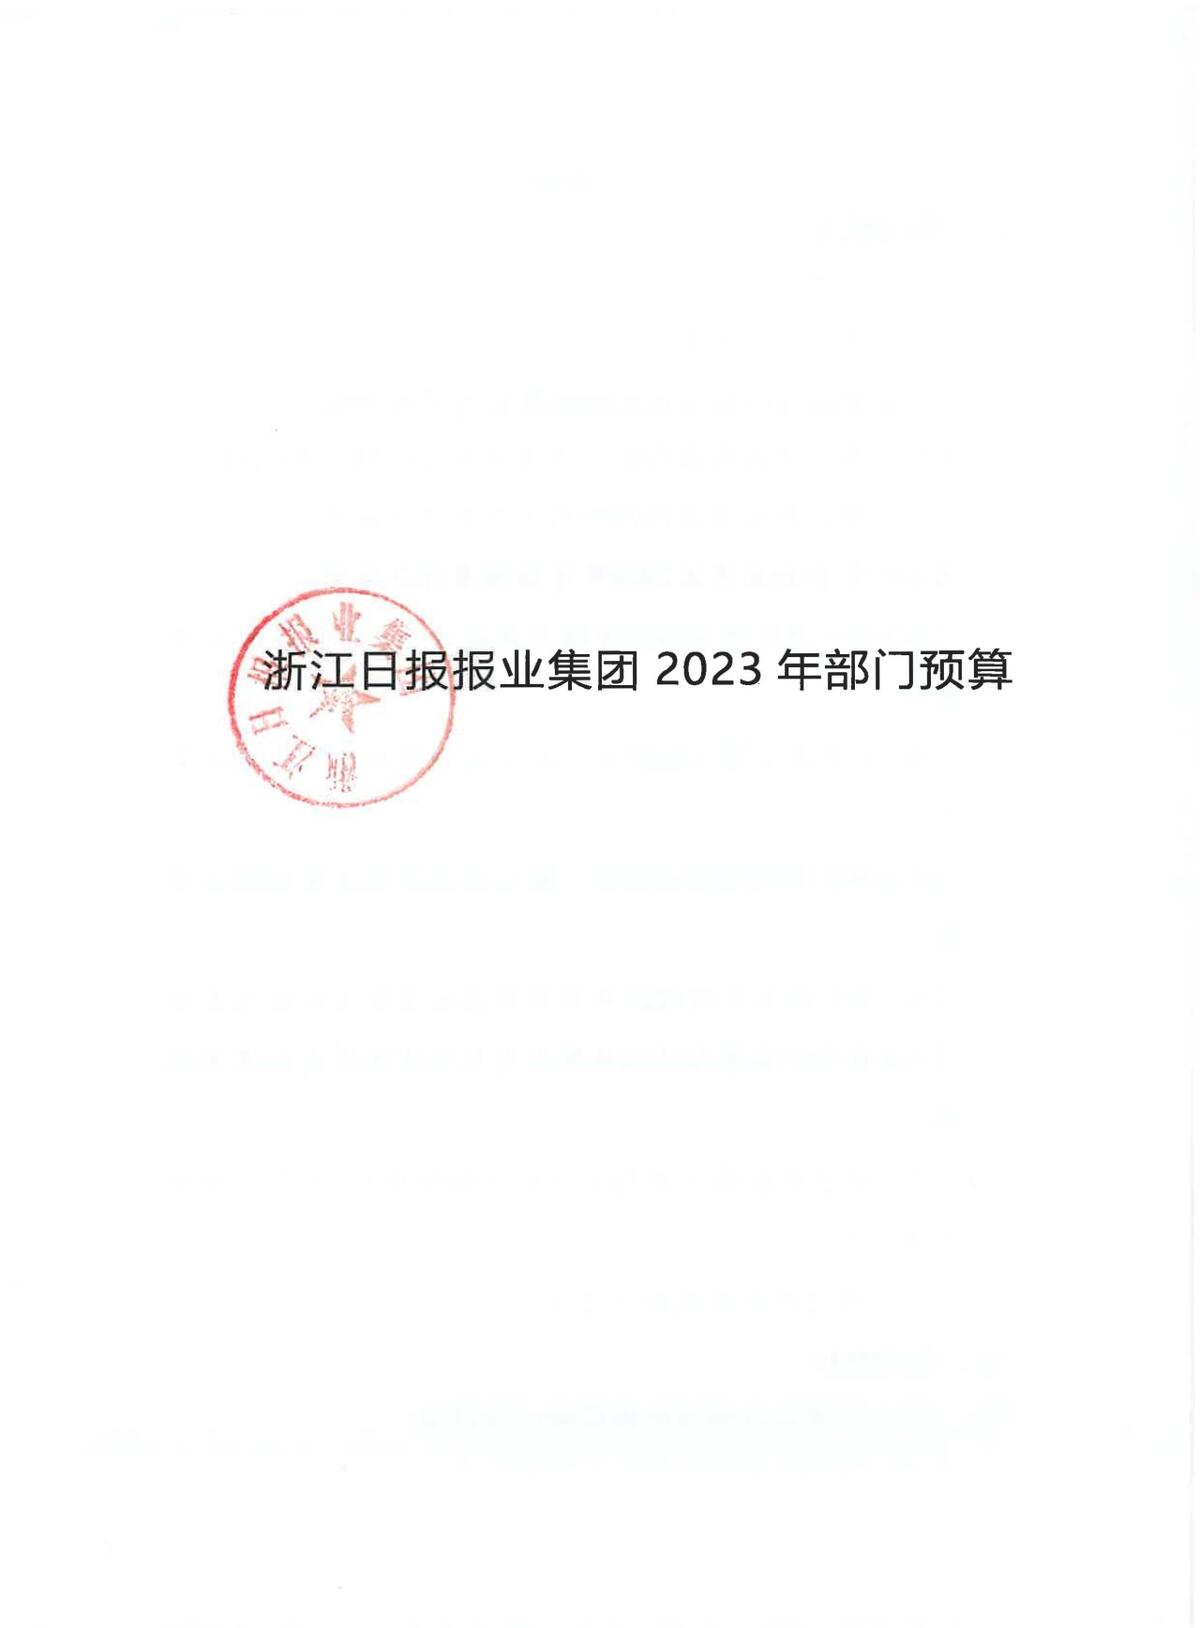 浙江日报报业集团2023年部门预算公开_页面_01.jpg